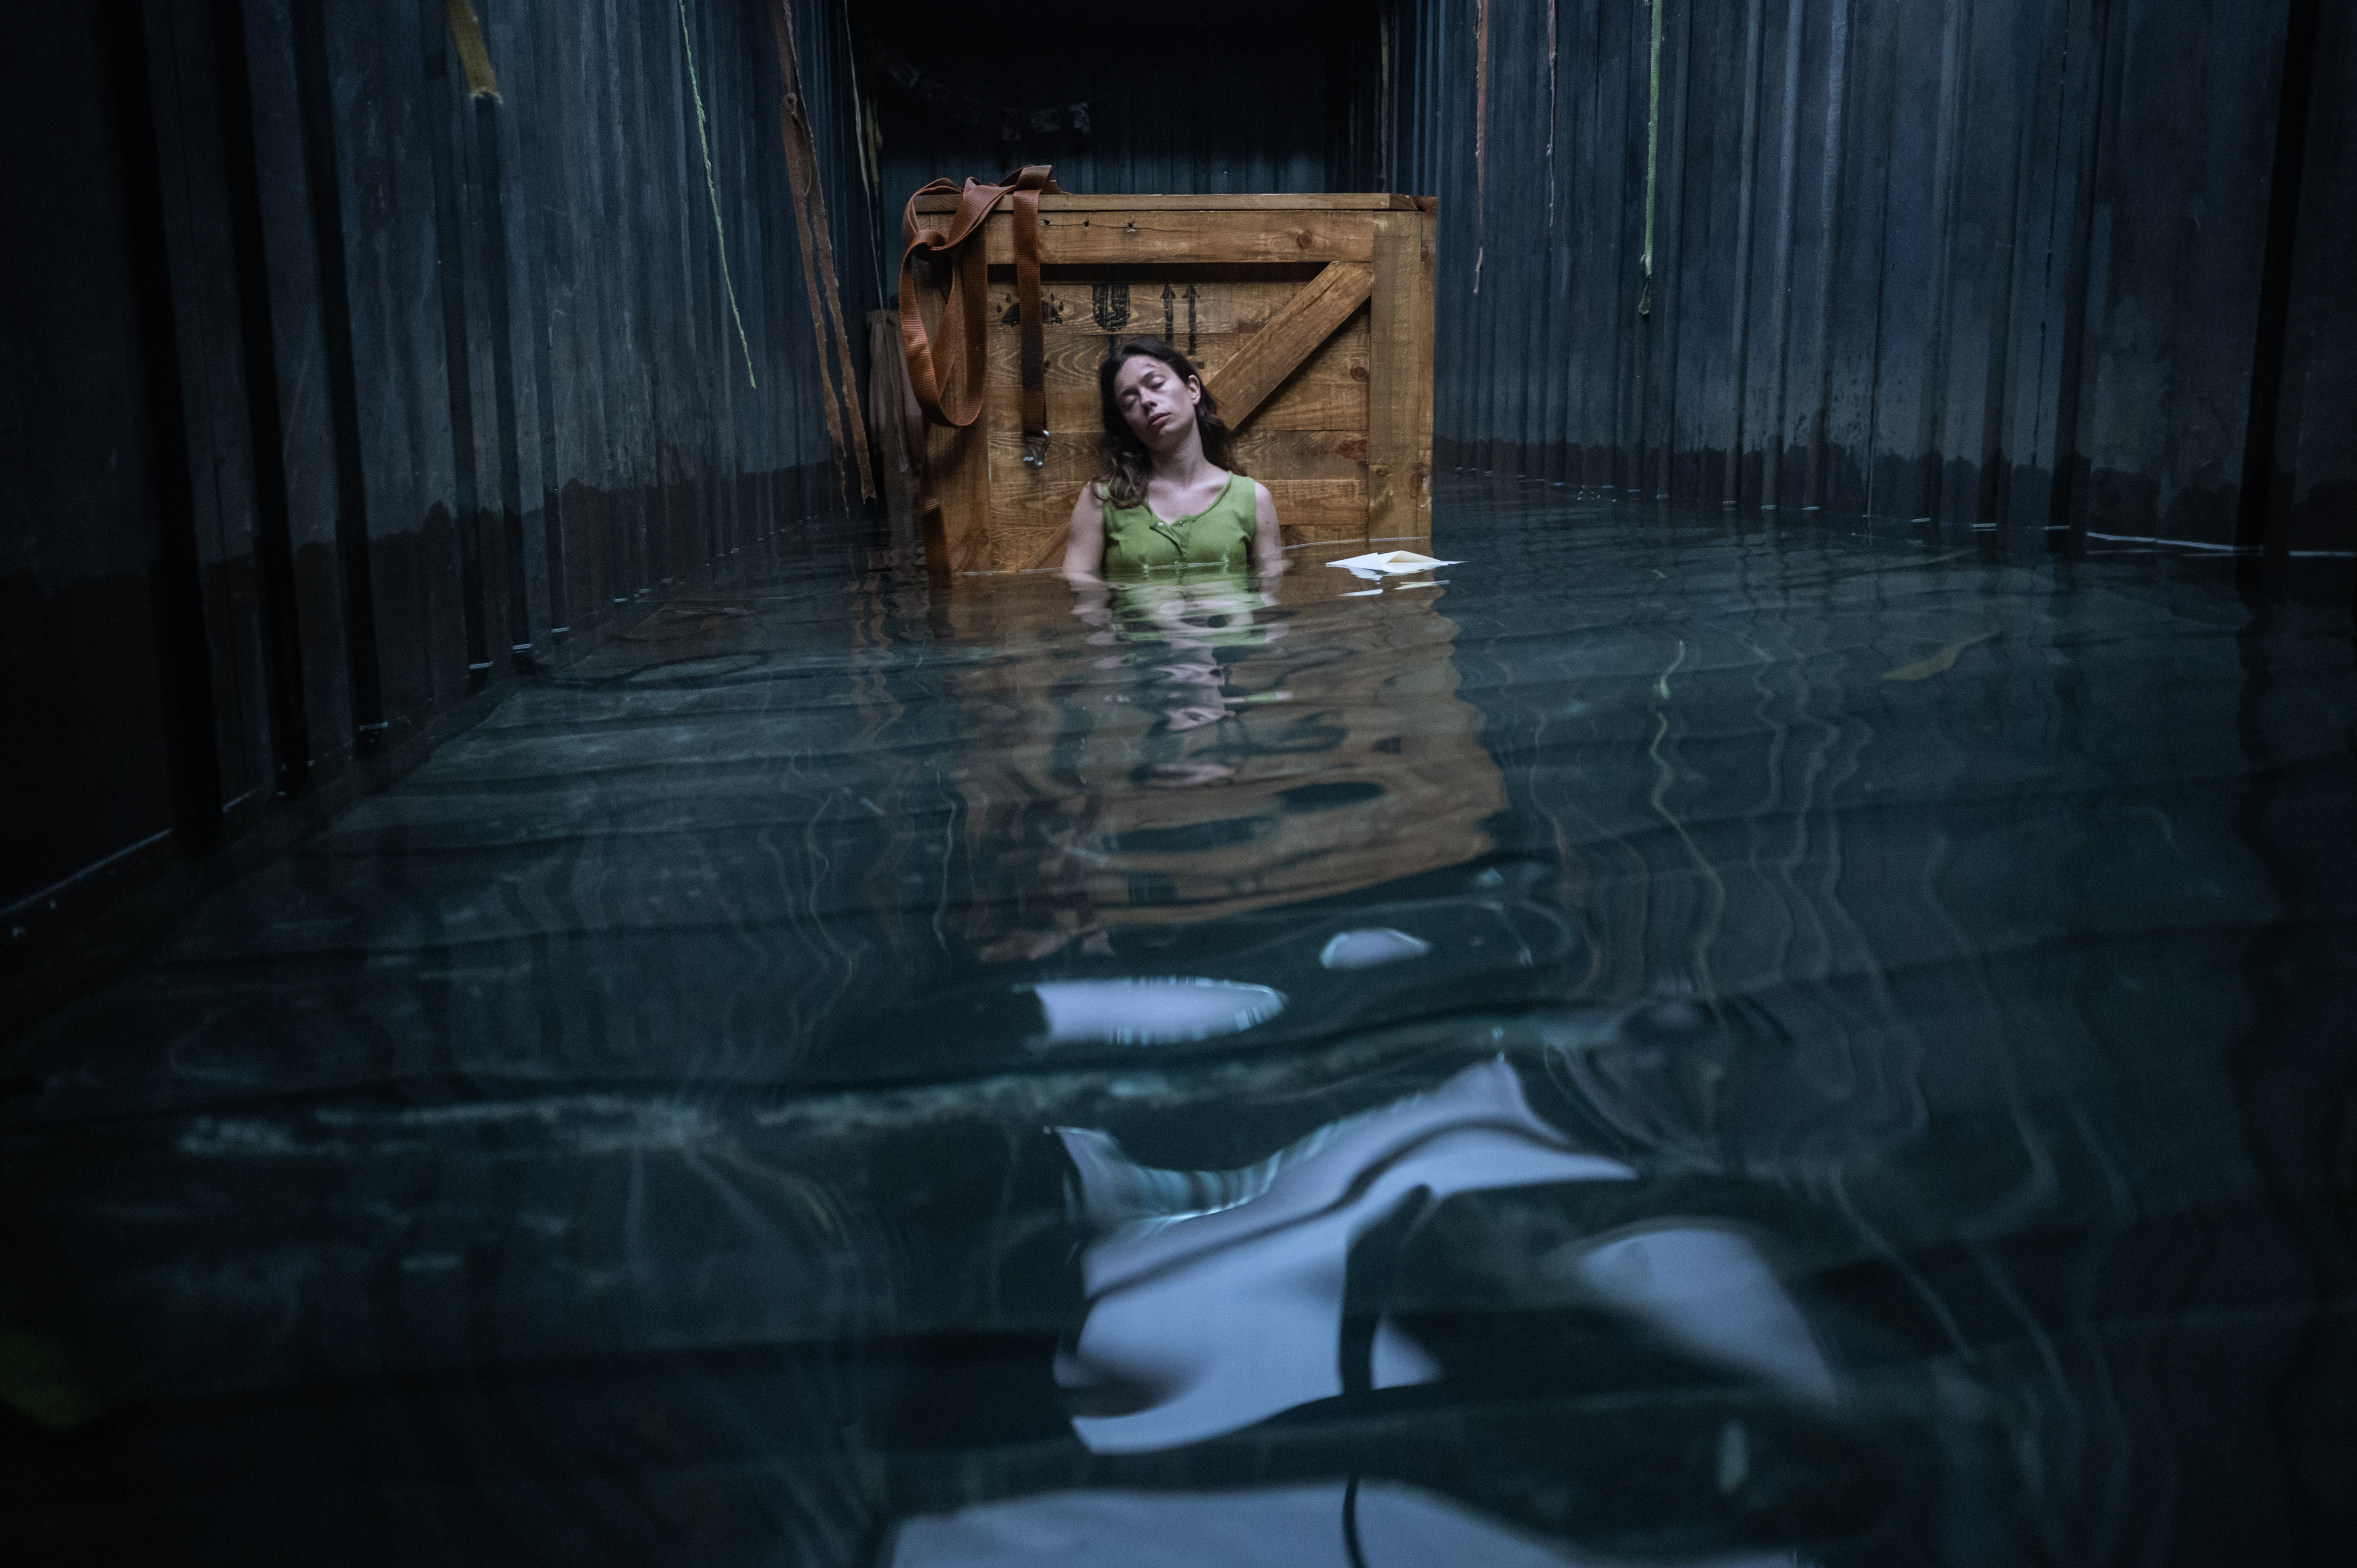 Die schwangere Frau strandet in einem sinkenden Frachtcontainer